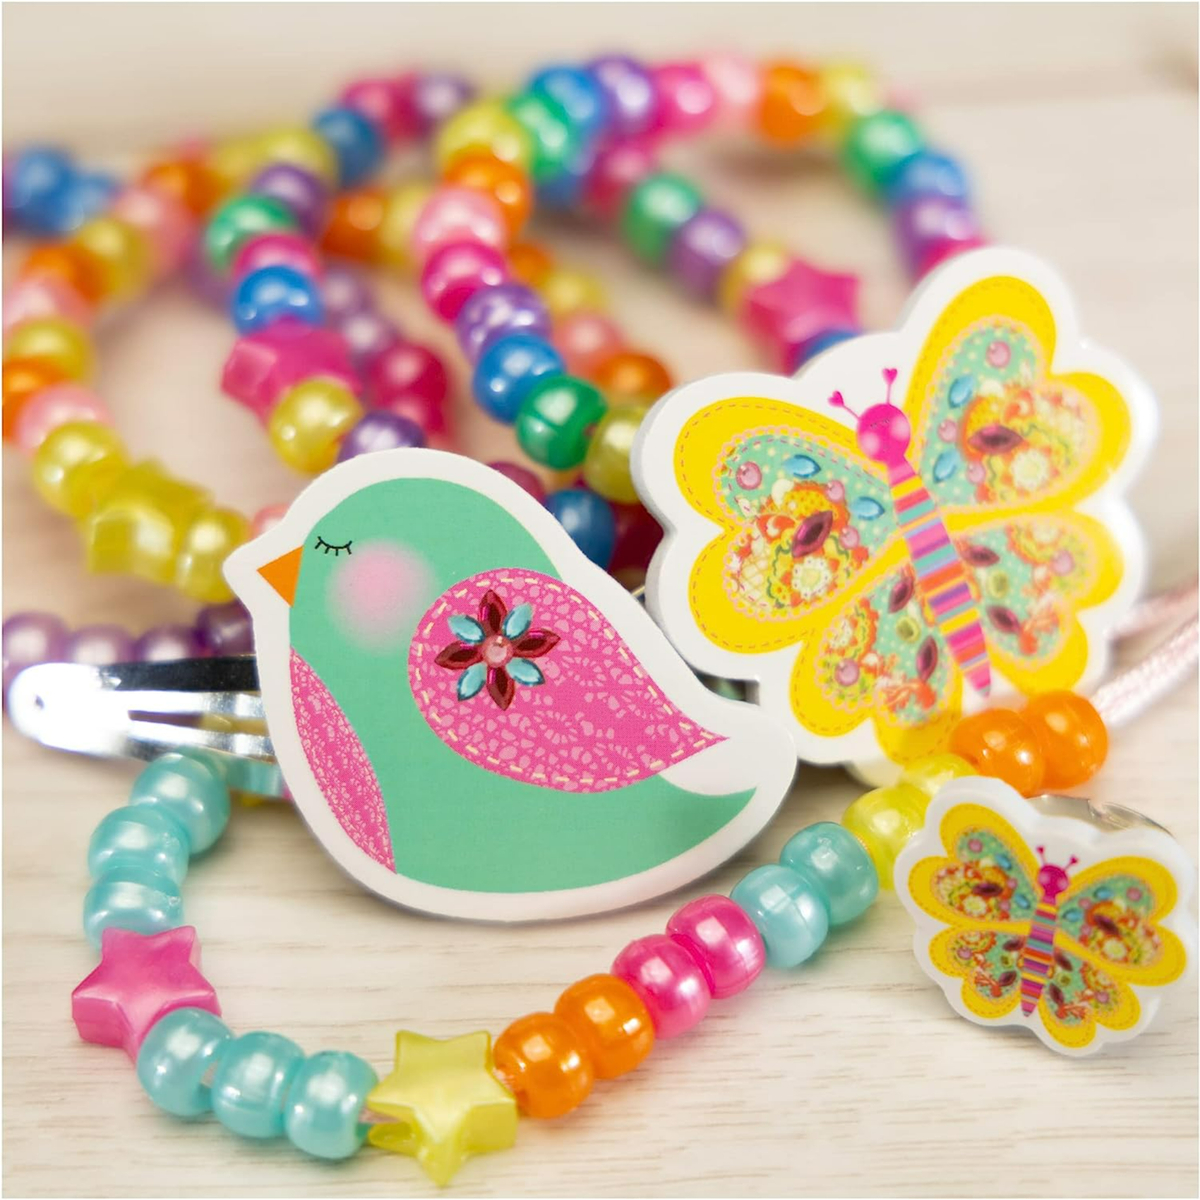 Galt Jewellery Craft Toy, Multicolor, 1003421